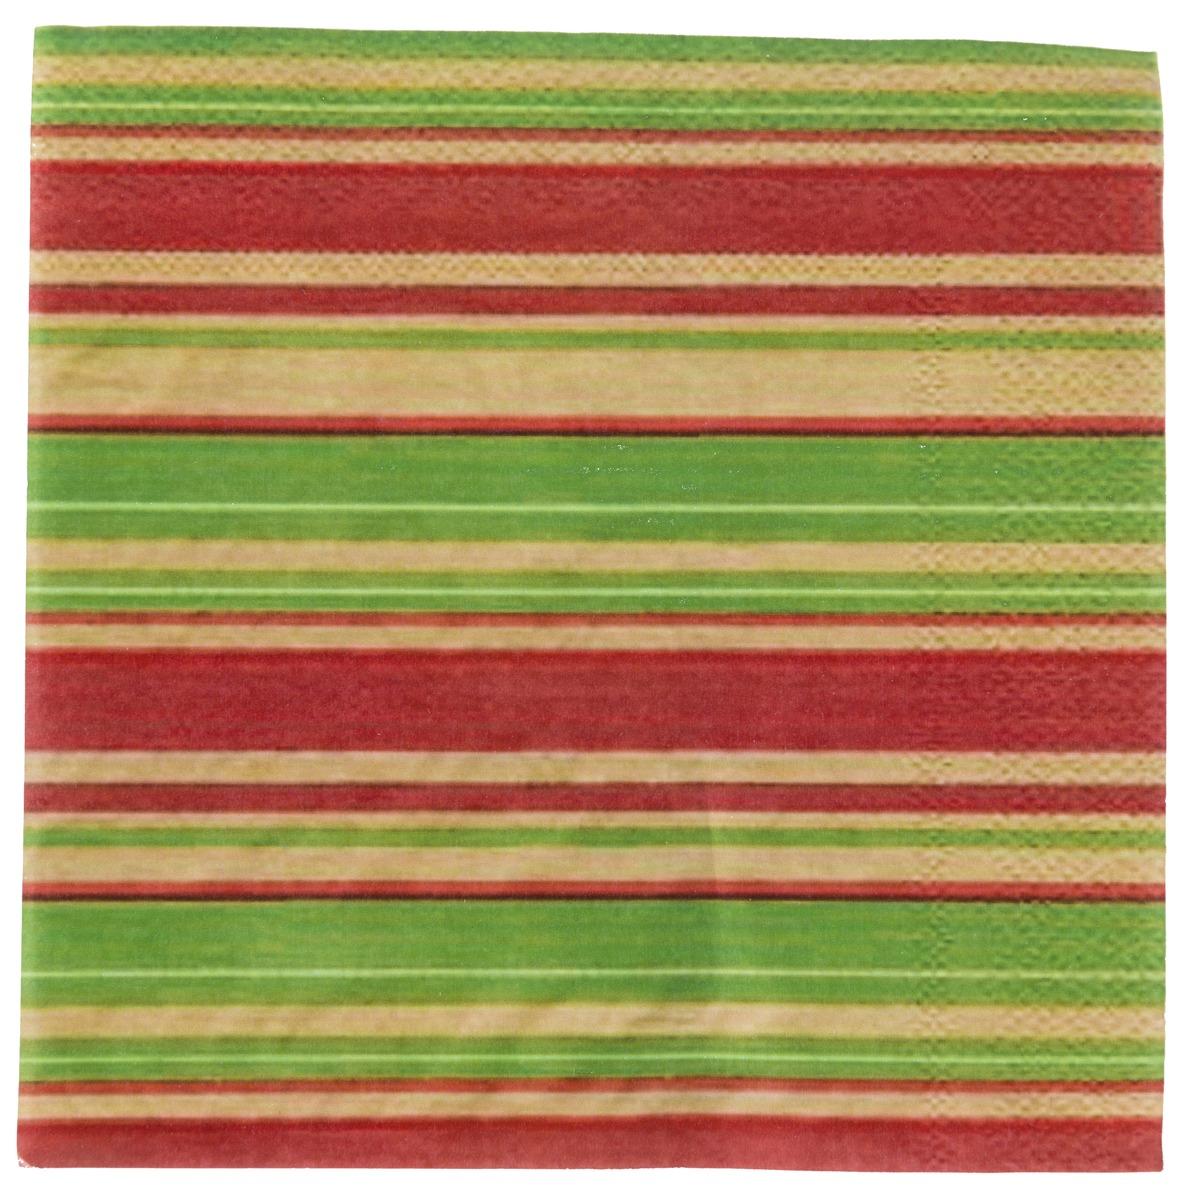 Lot de 20 serviettes en papier motif lignes - 33 x 33 cm - Vert, Jaune or, Rouge